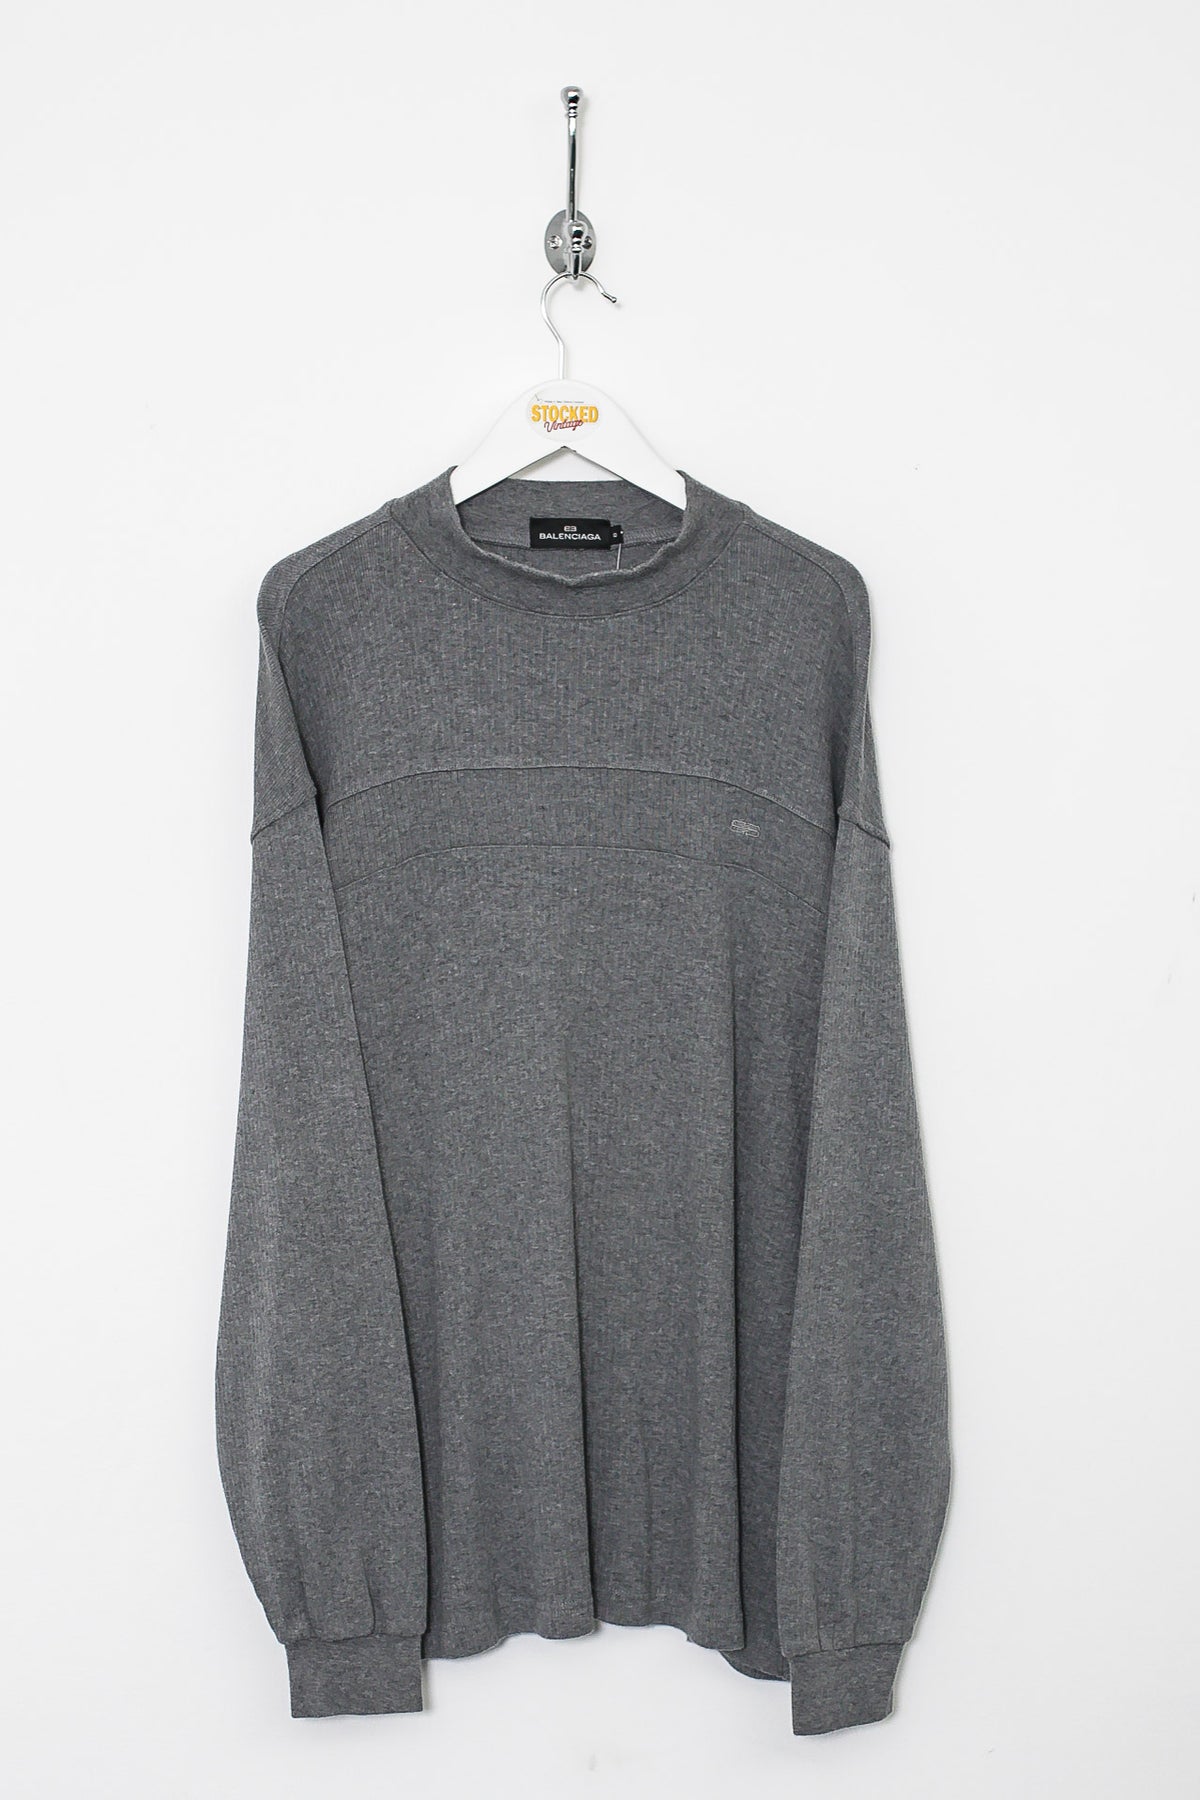 00s Balenciaga Sweatshirt (XL)